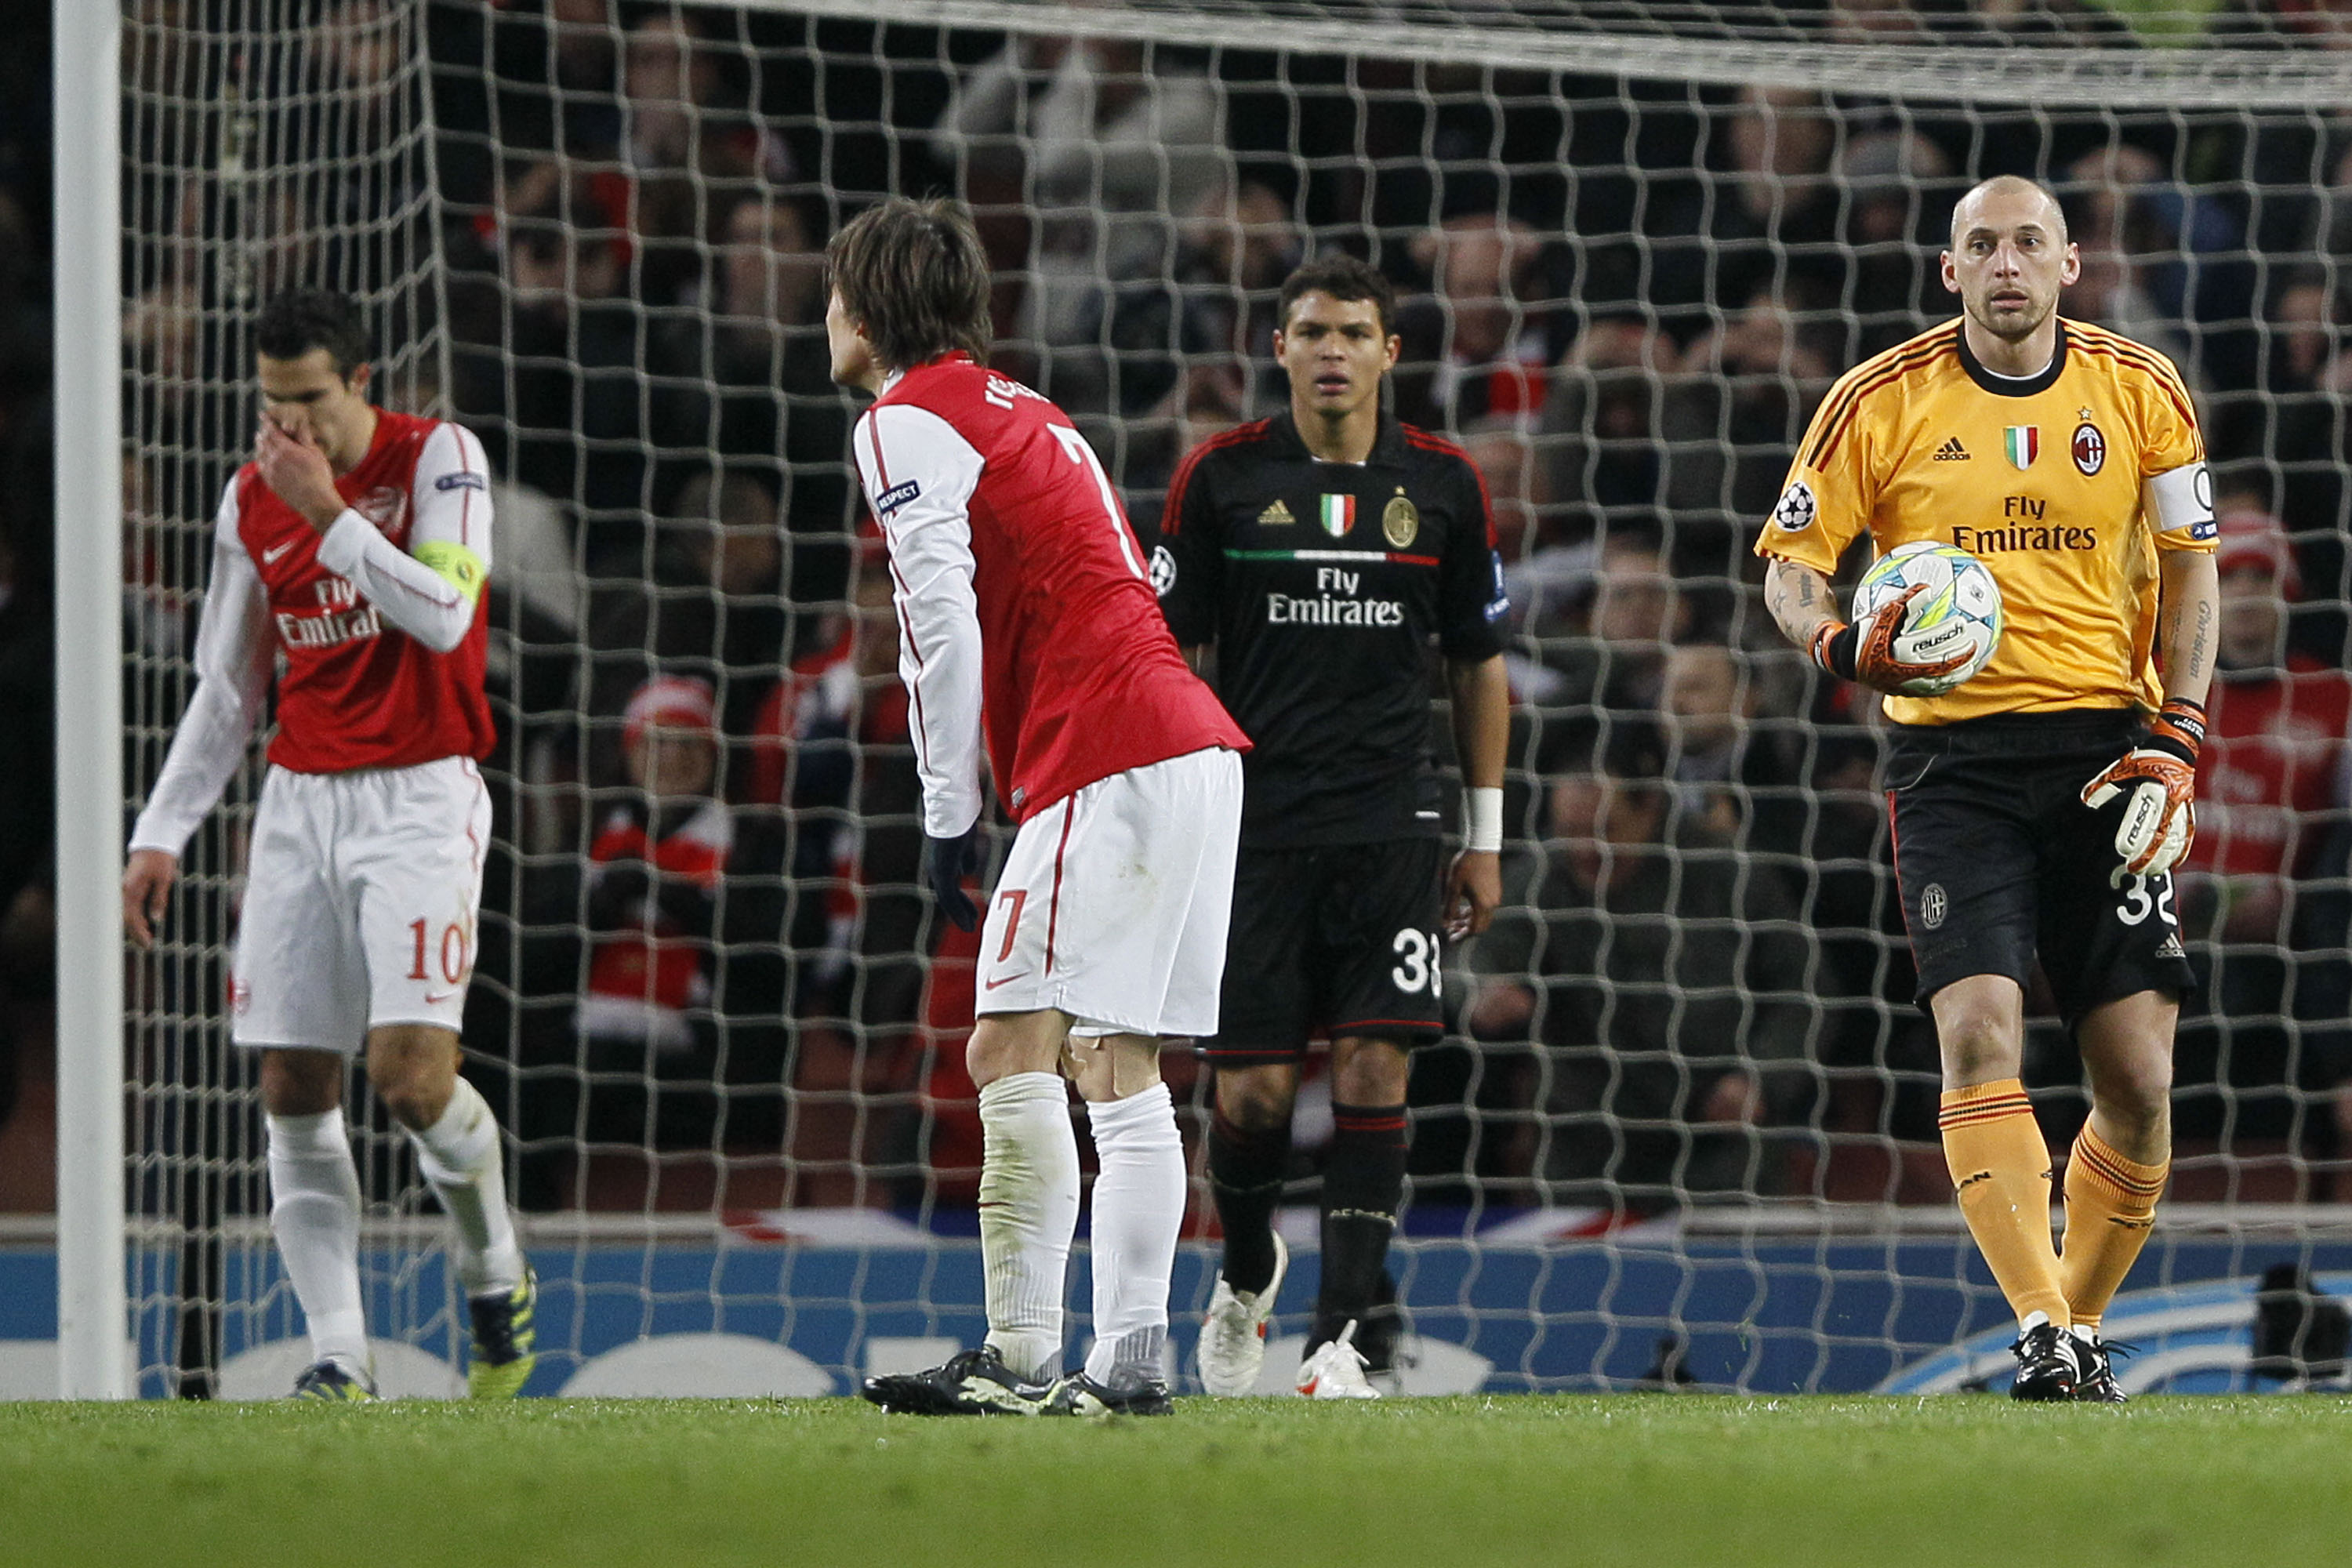 Arsenal letade efter ett 4-0-mål och försökte sätta baljan som skulle ta mötet till förlängning. Men det gick bara inte.